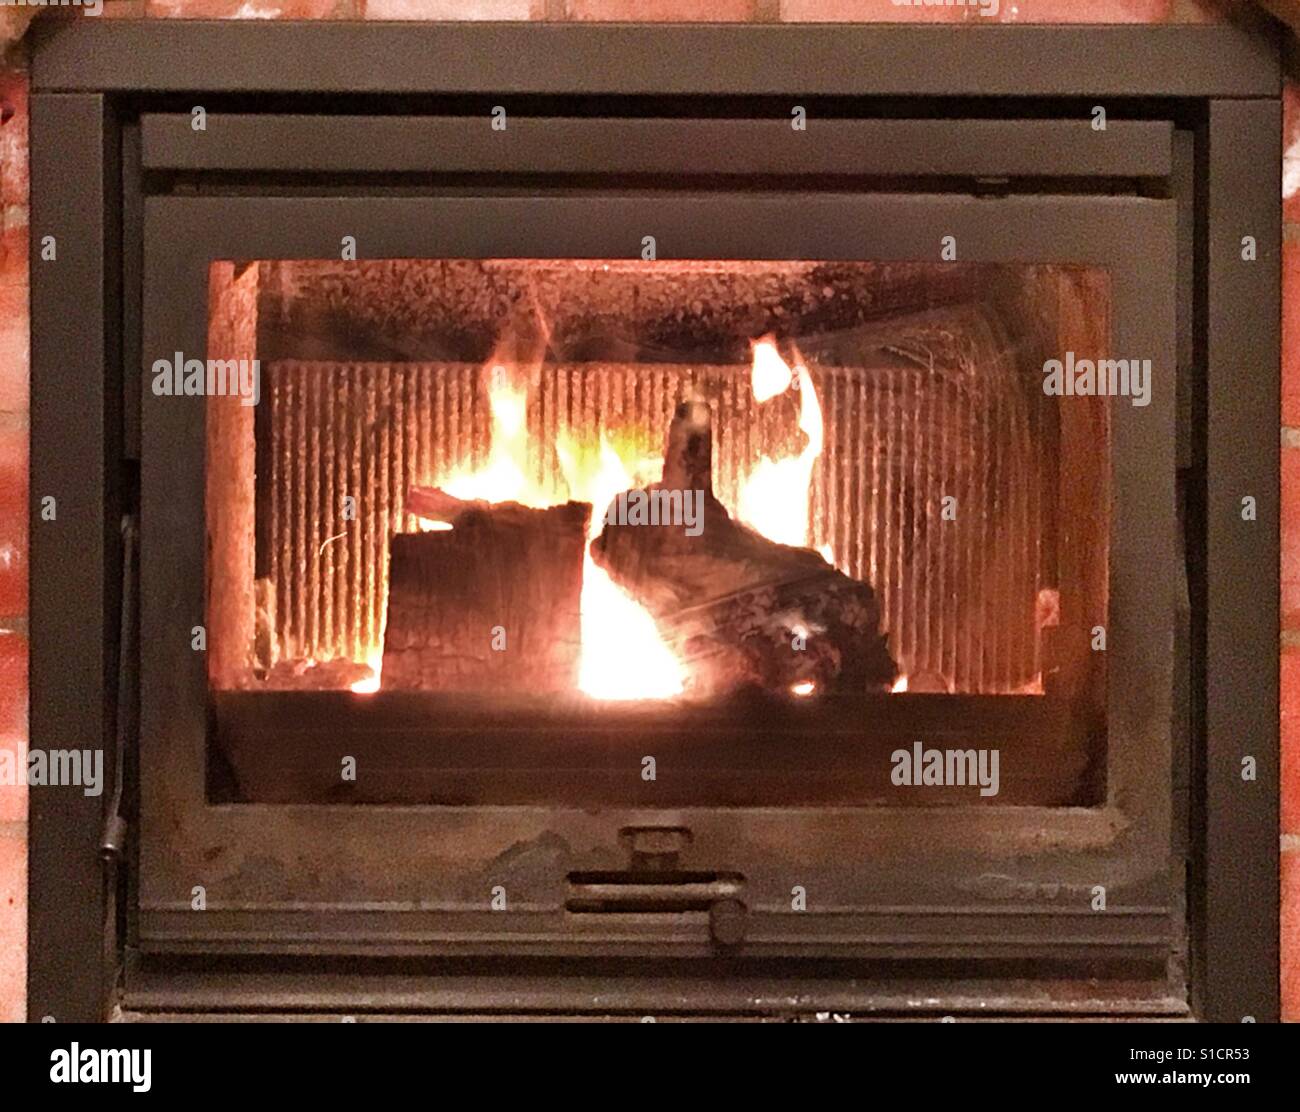 Feuer in einem hölzernen brennenden Ofen mit einem Stück Holz, das aussieht wie eine Kaninchen-Silhouette. Stockfoto